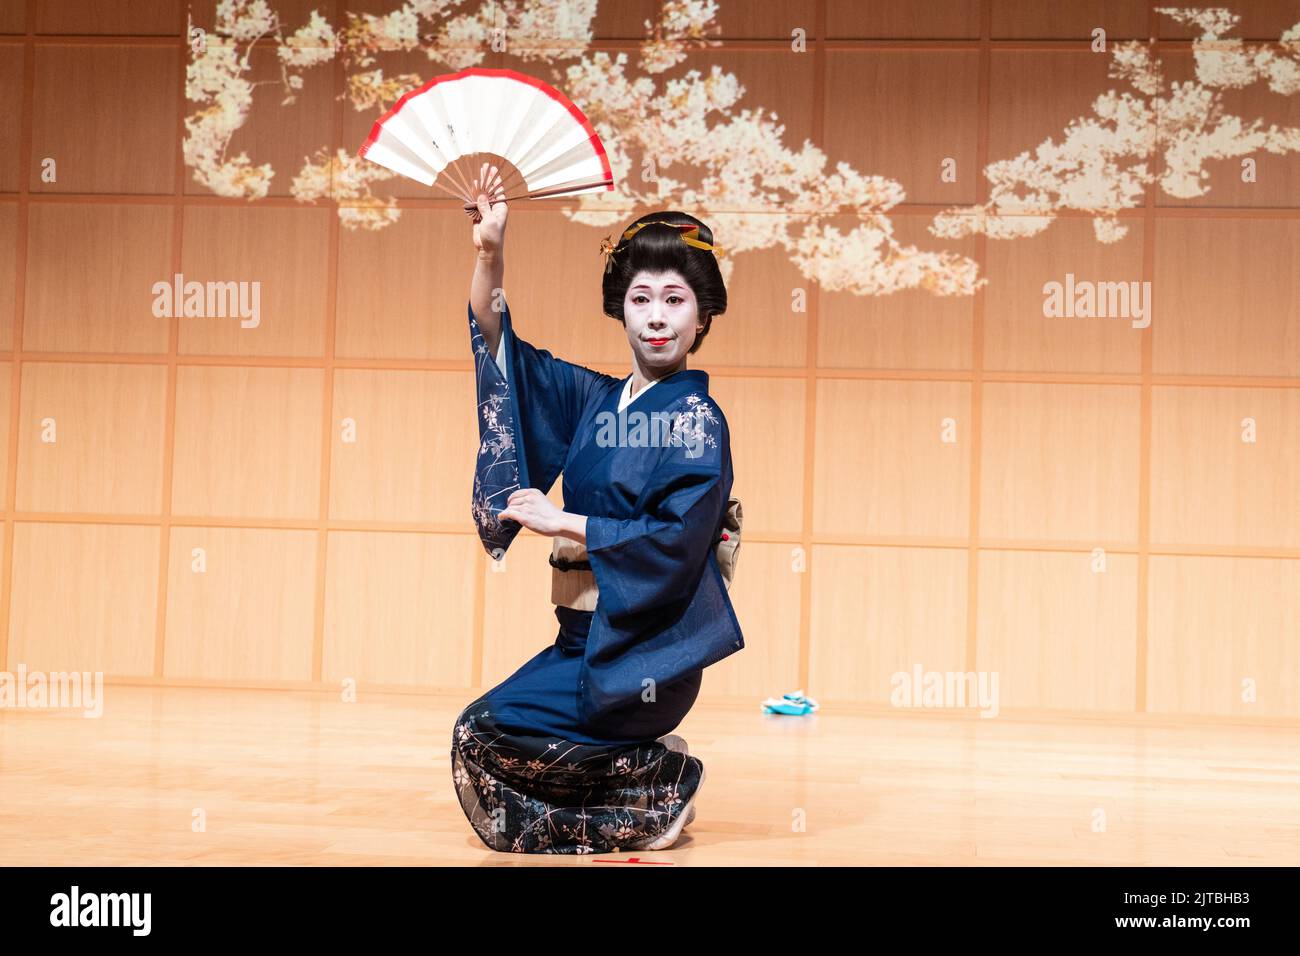 Une geisha japonaise portant un kimono, interprète une danse traditionnelle de fan au sanctuaire Kanda Myojin, à Chiyoda, Tokyo, Japon. Banque D'Images